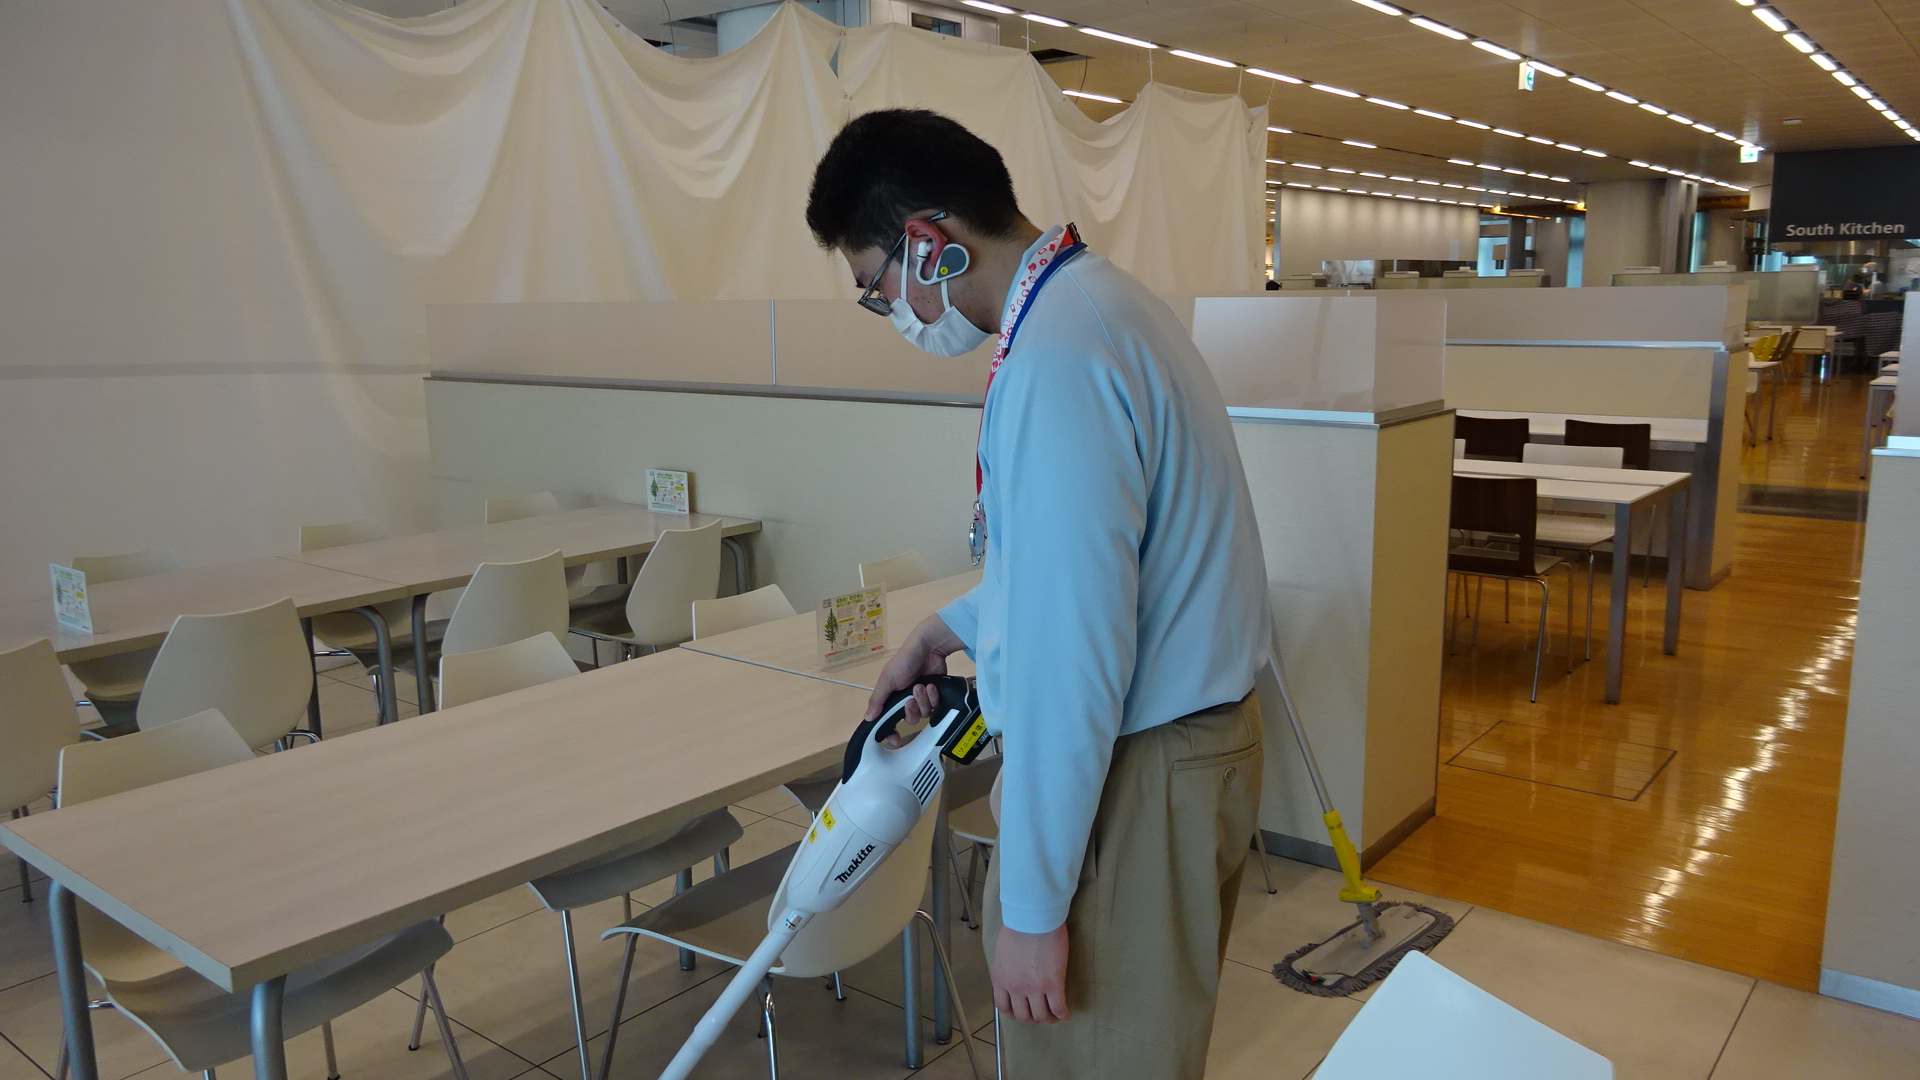 スタッフが「NYSNO-100」でサポーターと会話しながら食堂の清掃業務を行う画像